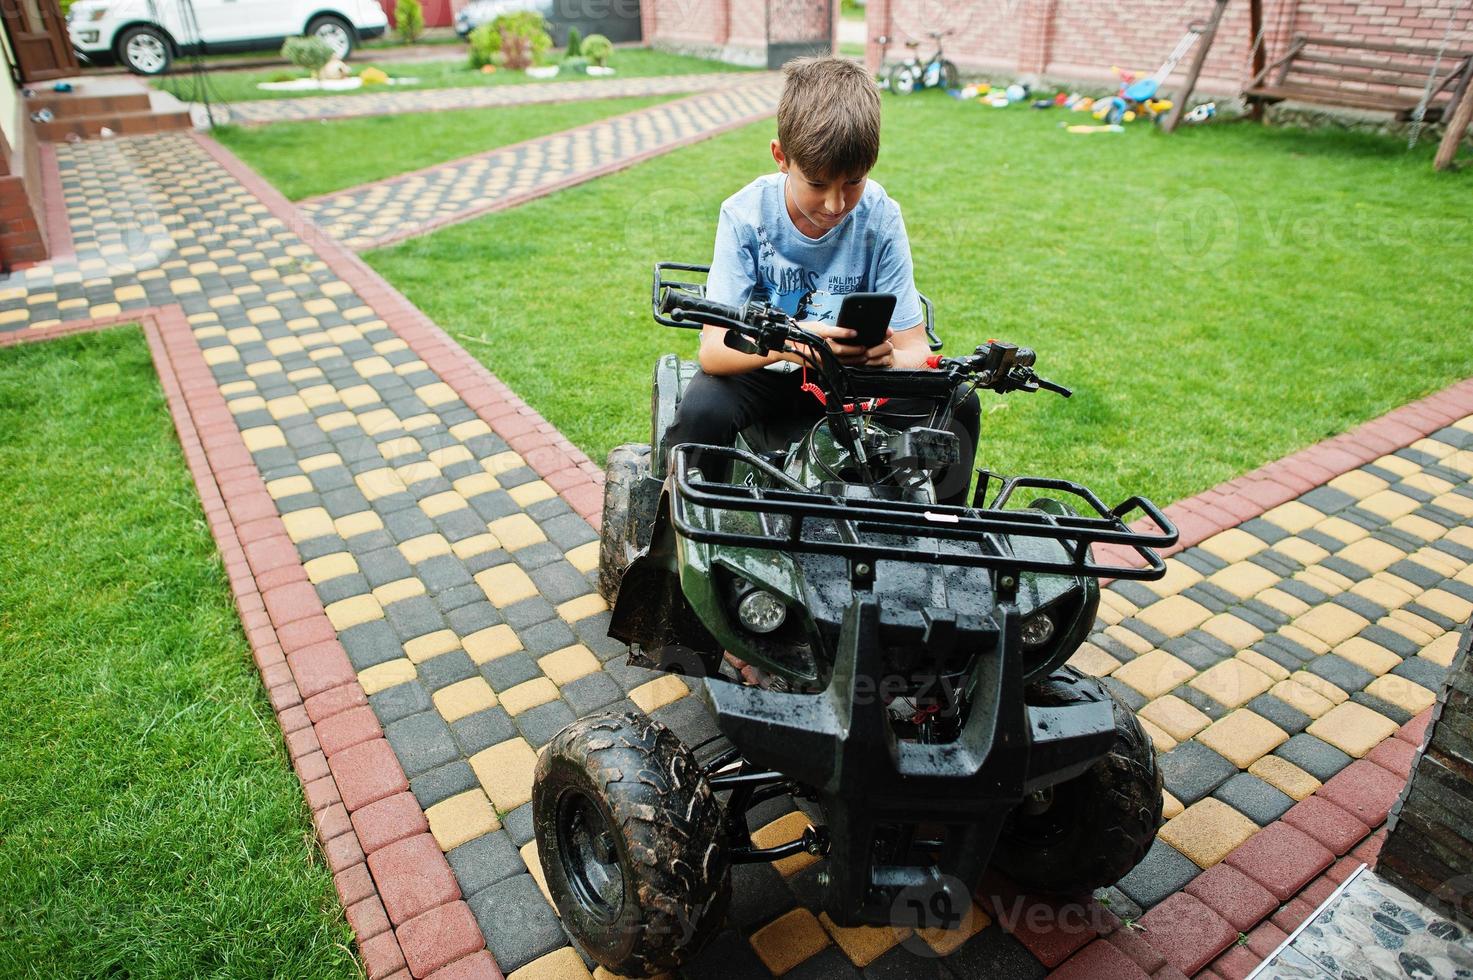 menino em quadriciclo de quatro rodas com telefone celular. foto